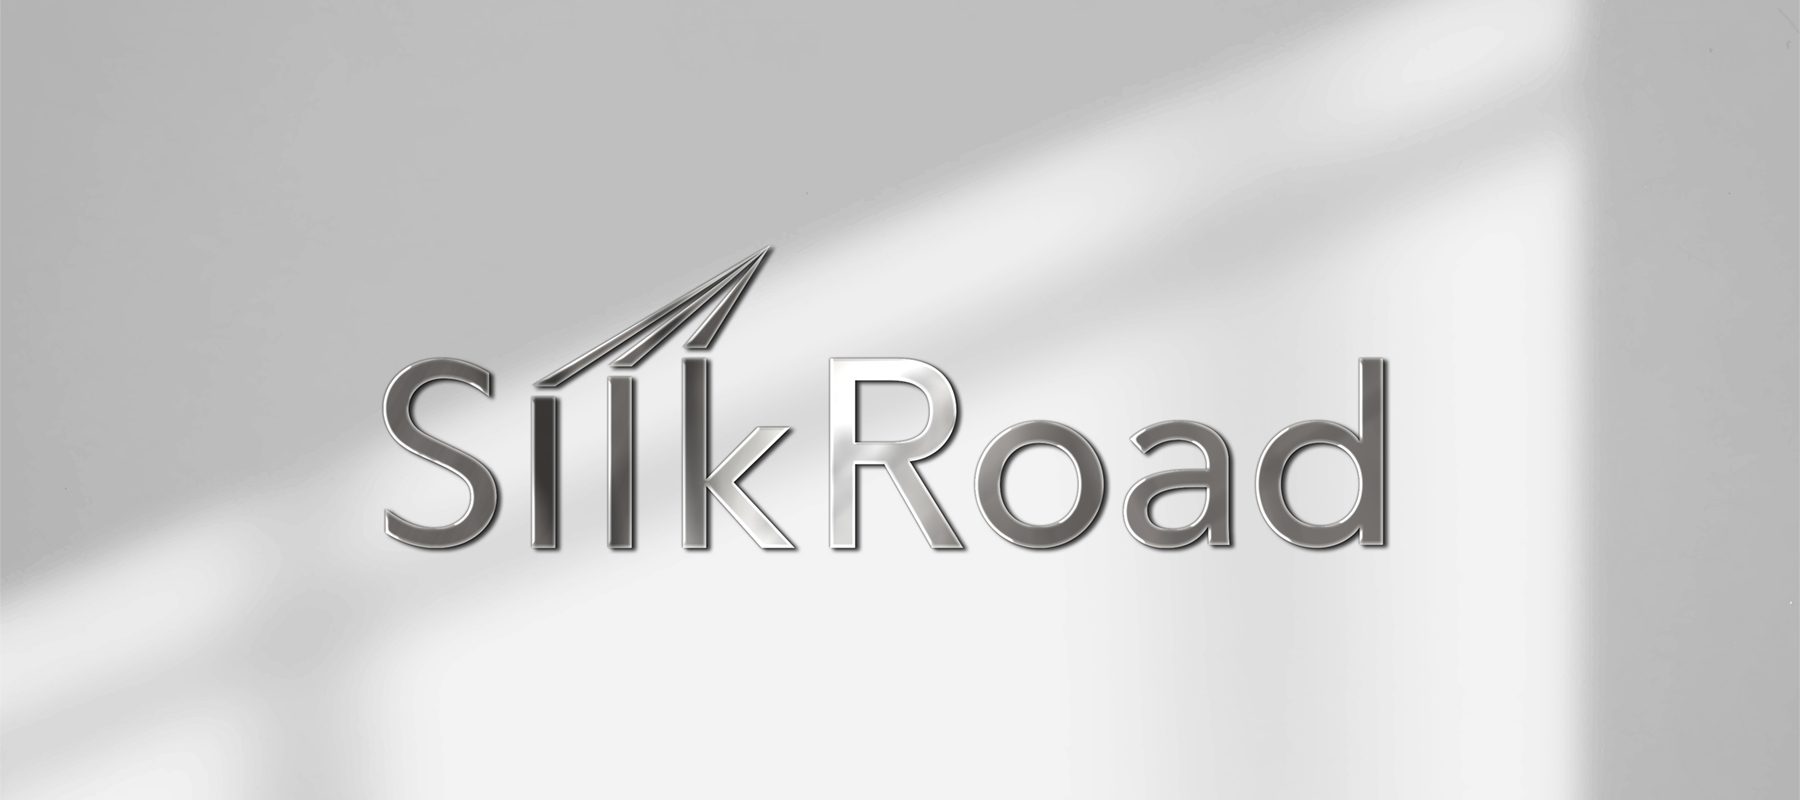 Silkroad 3D logo on wall